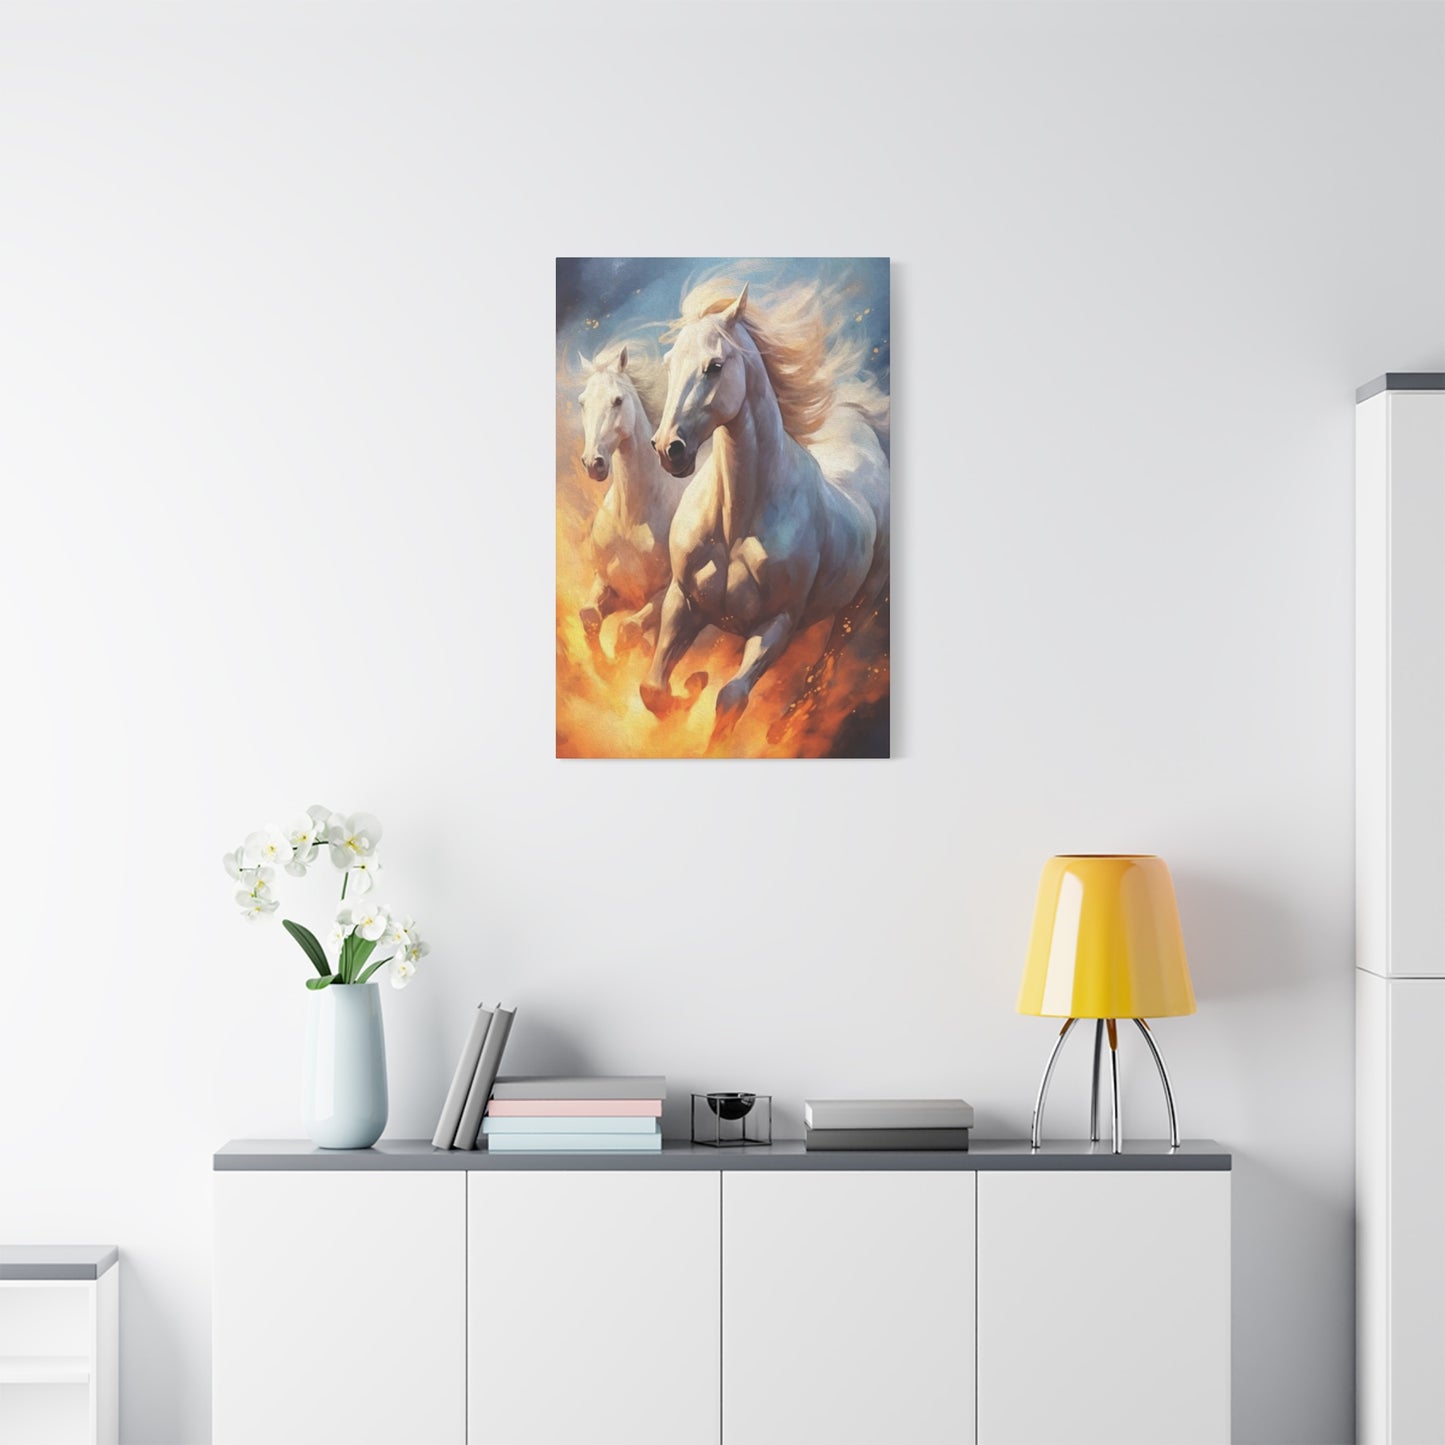 Twin Horses Wall Art & Canvas Prints